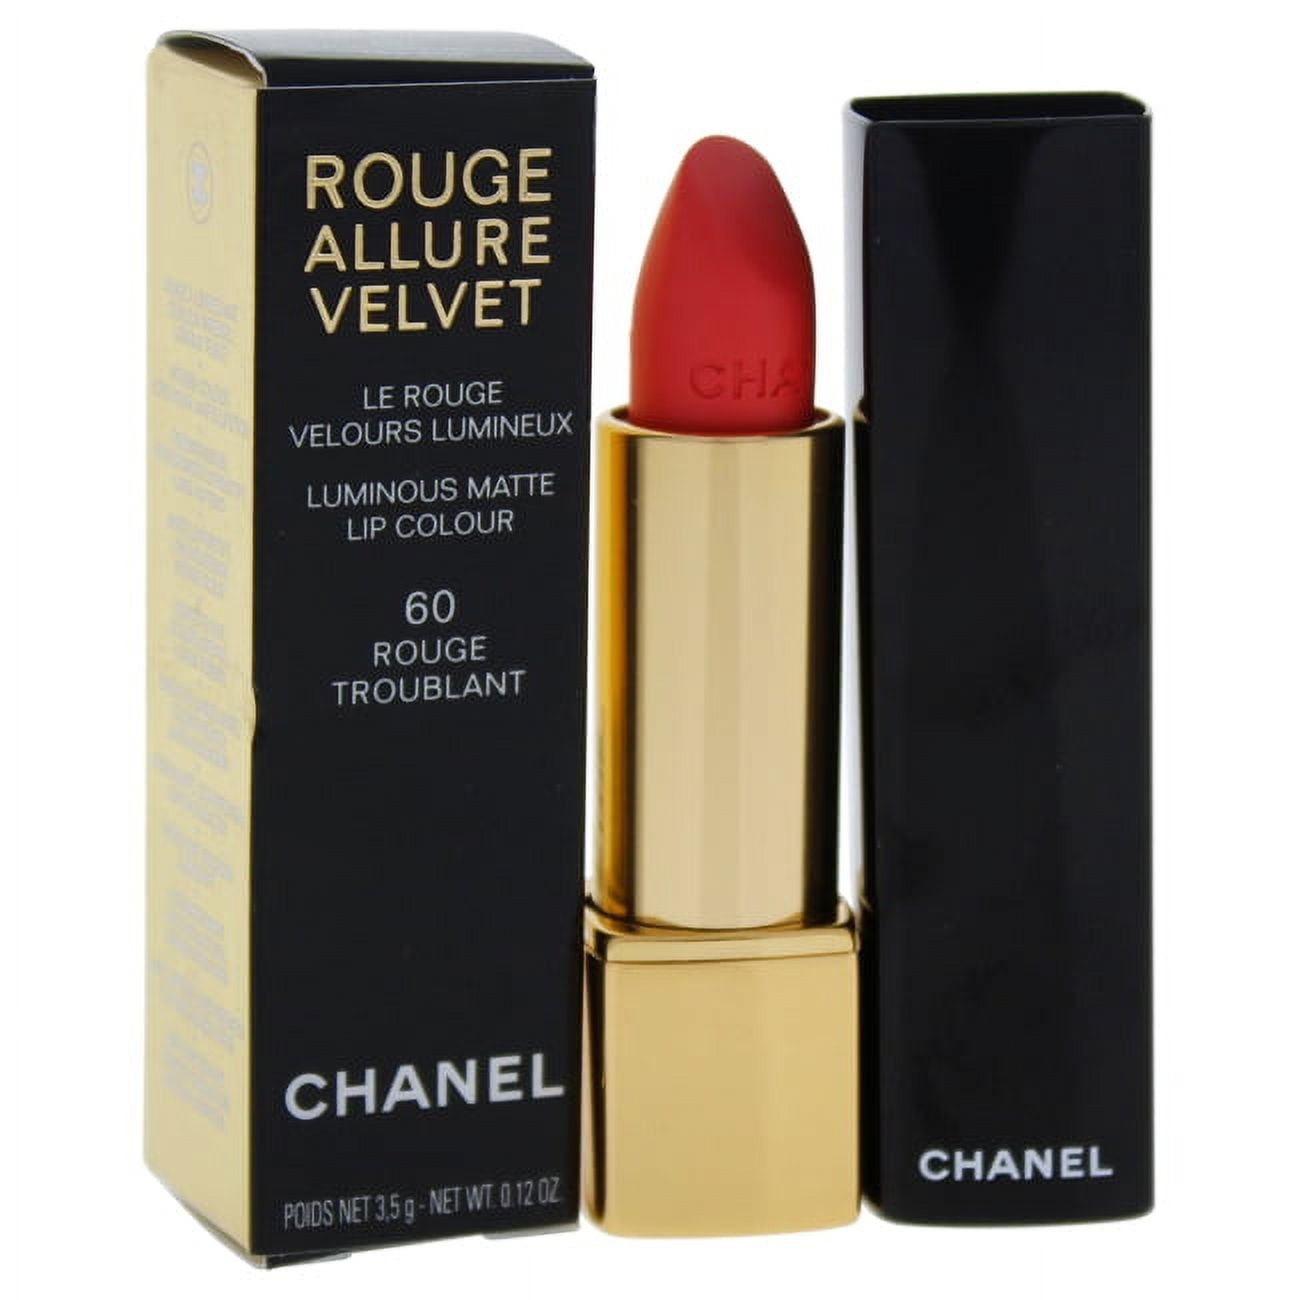 Chanel Rouge Allure Velvet Luminous Matte Lip Colour - # 60 Rouge